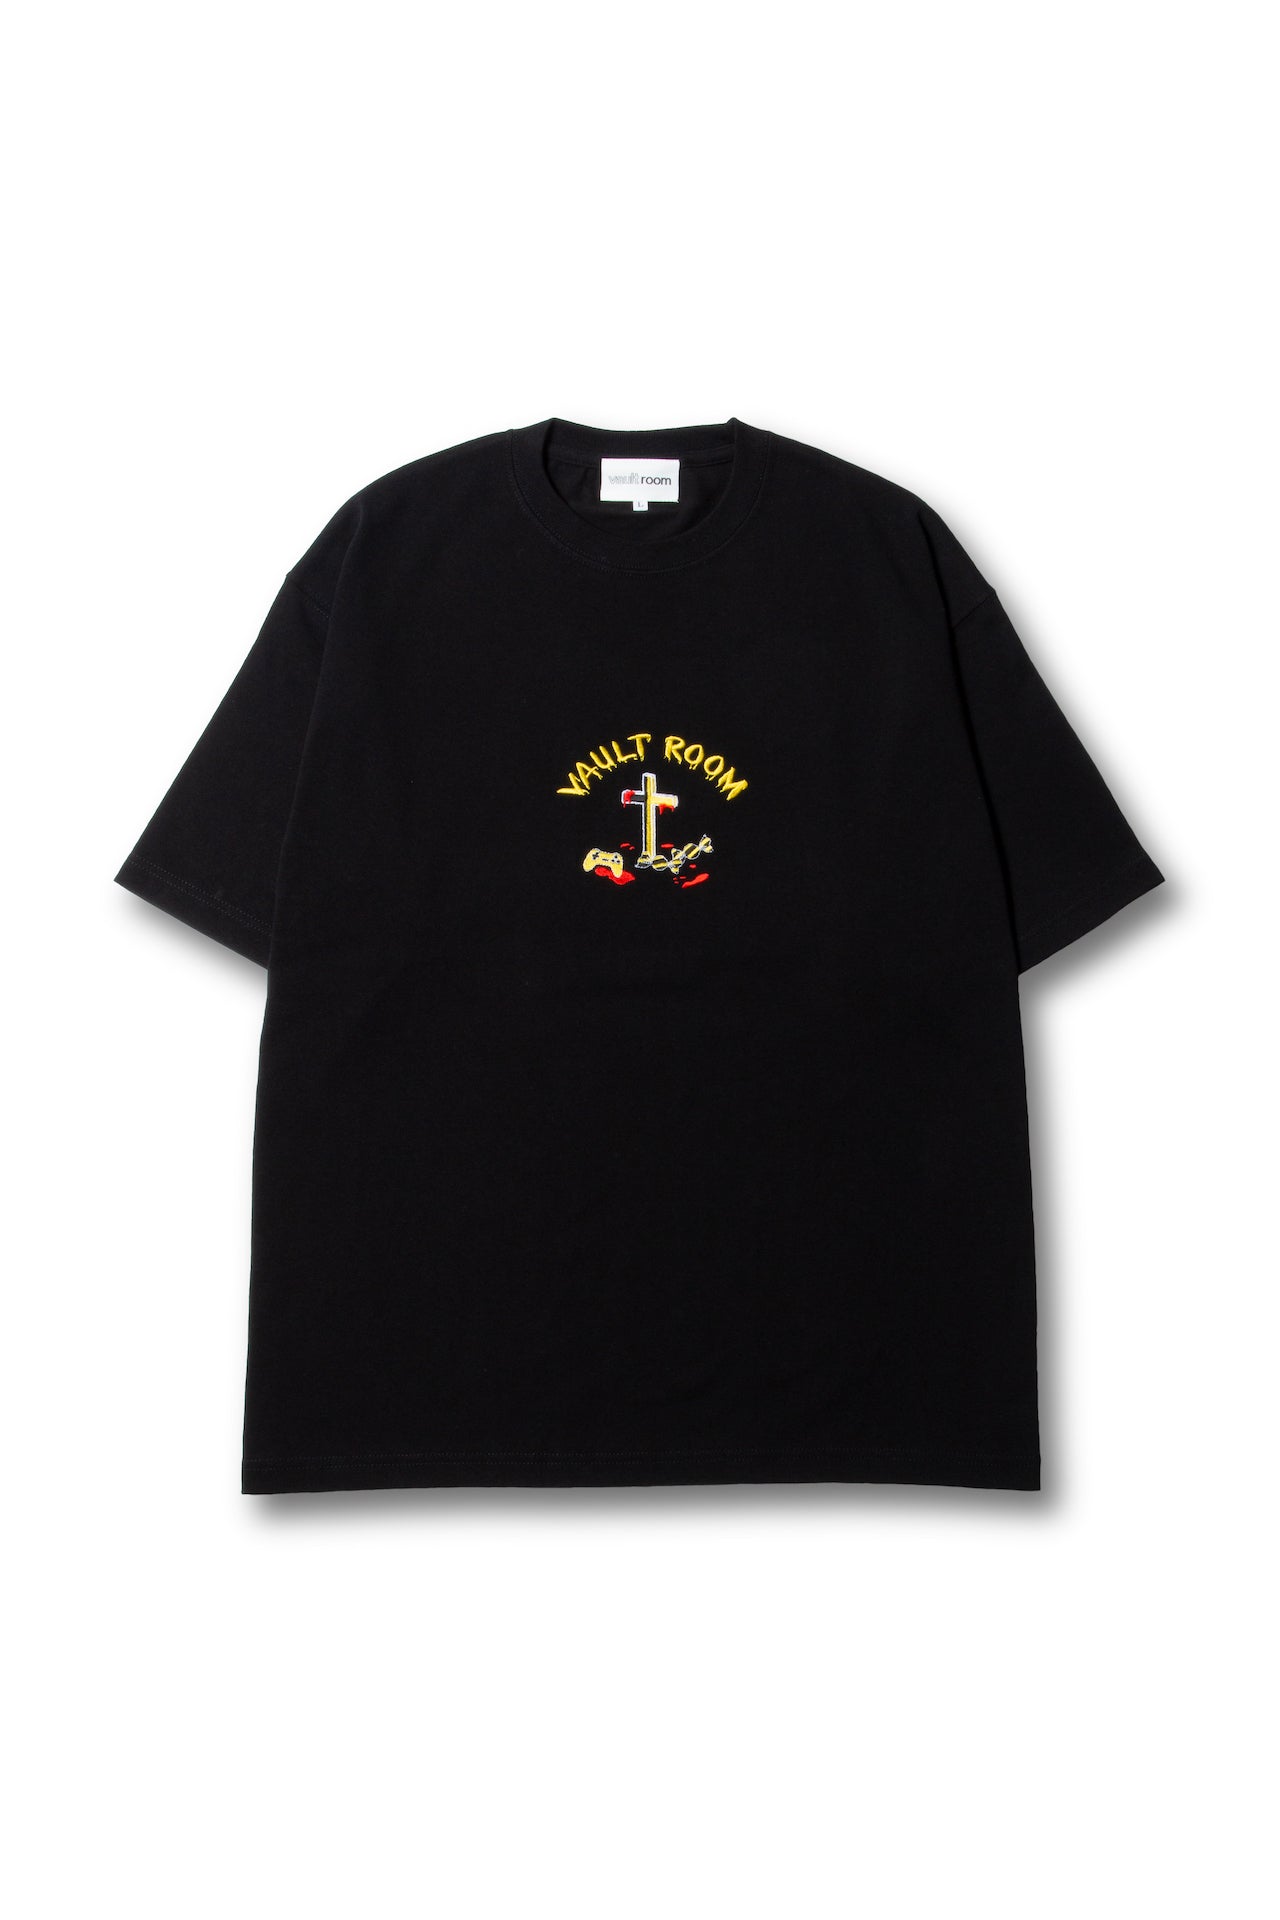 vaultroom 麻婆豆腐TEE Lサイズ - Tシャツ/カットソー(半袖/袖なし)